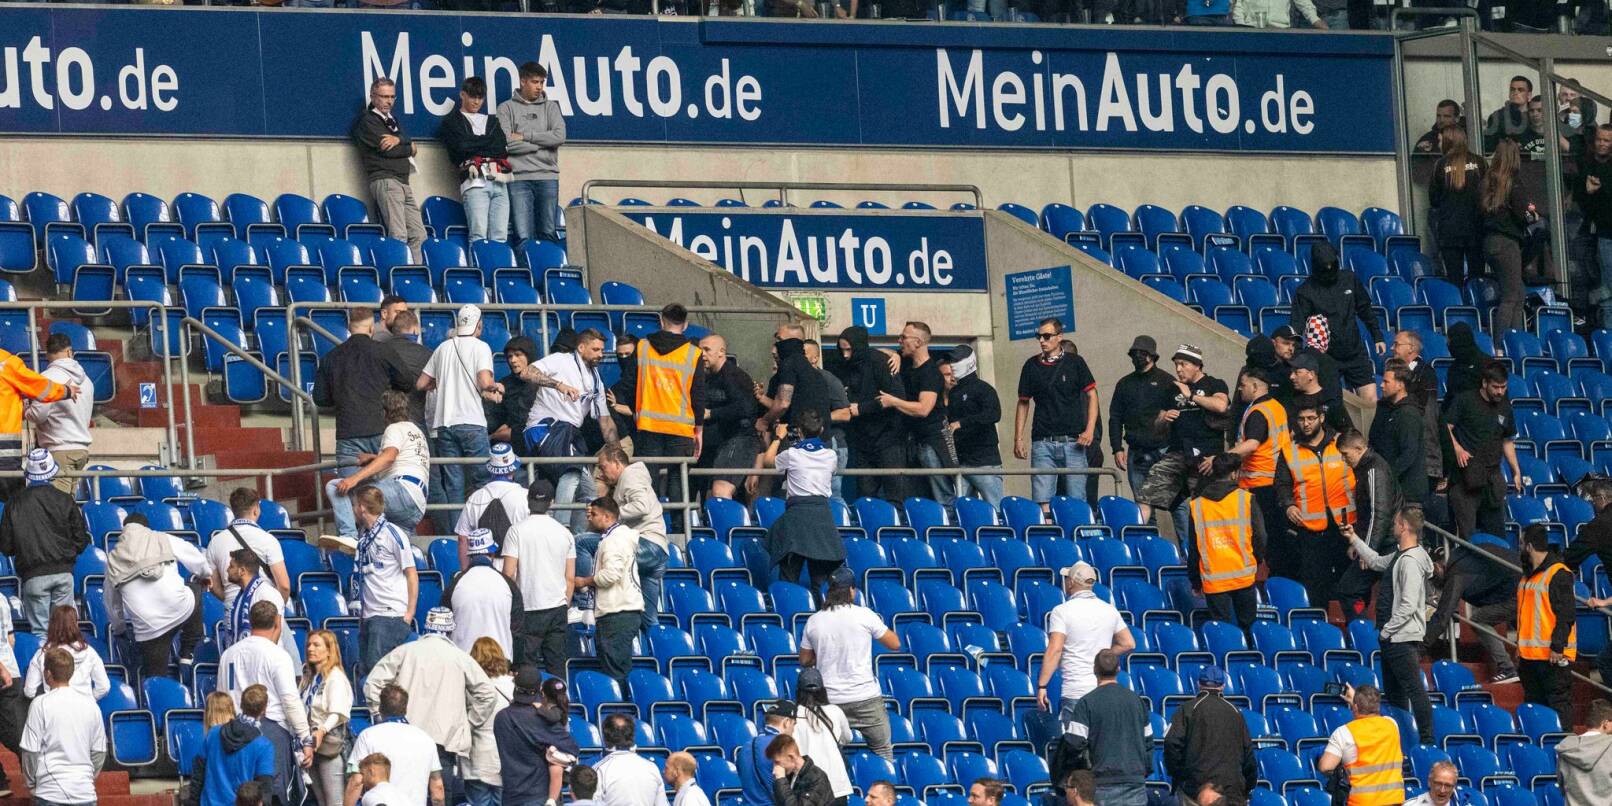 Schalker (weiße Shirts) und Frankfurter Fans prügeln sich nach dem Spiel auf der Tribüne. Inzwischen hat die Polizei mehr als 200 Strafverfahren eingeleitet und etwa 140 Verdächtige identifiziert.